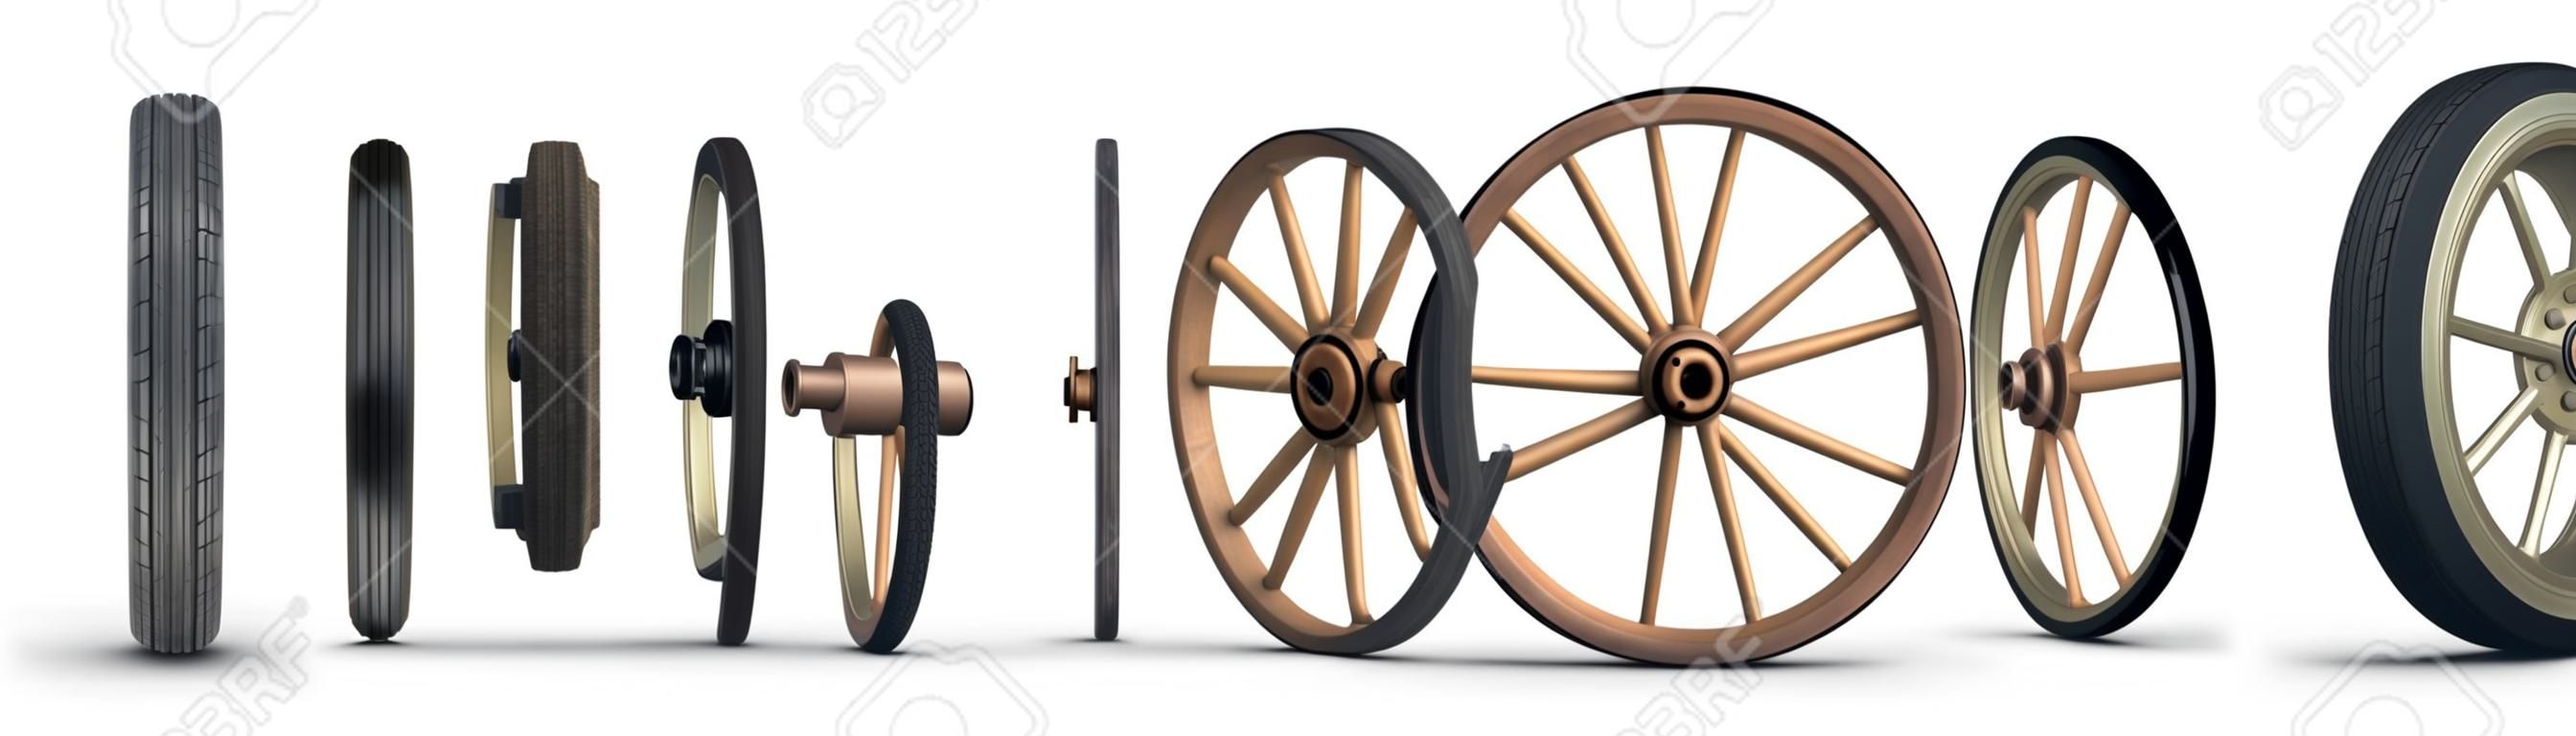 Abbildung zeigt die Entwicklung des Rades von einem Stein Rad beginnt und endet mit einem Stahl belted Radial Reifen. Geschossen Sie auf einem weißen Hintergrund.